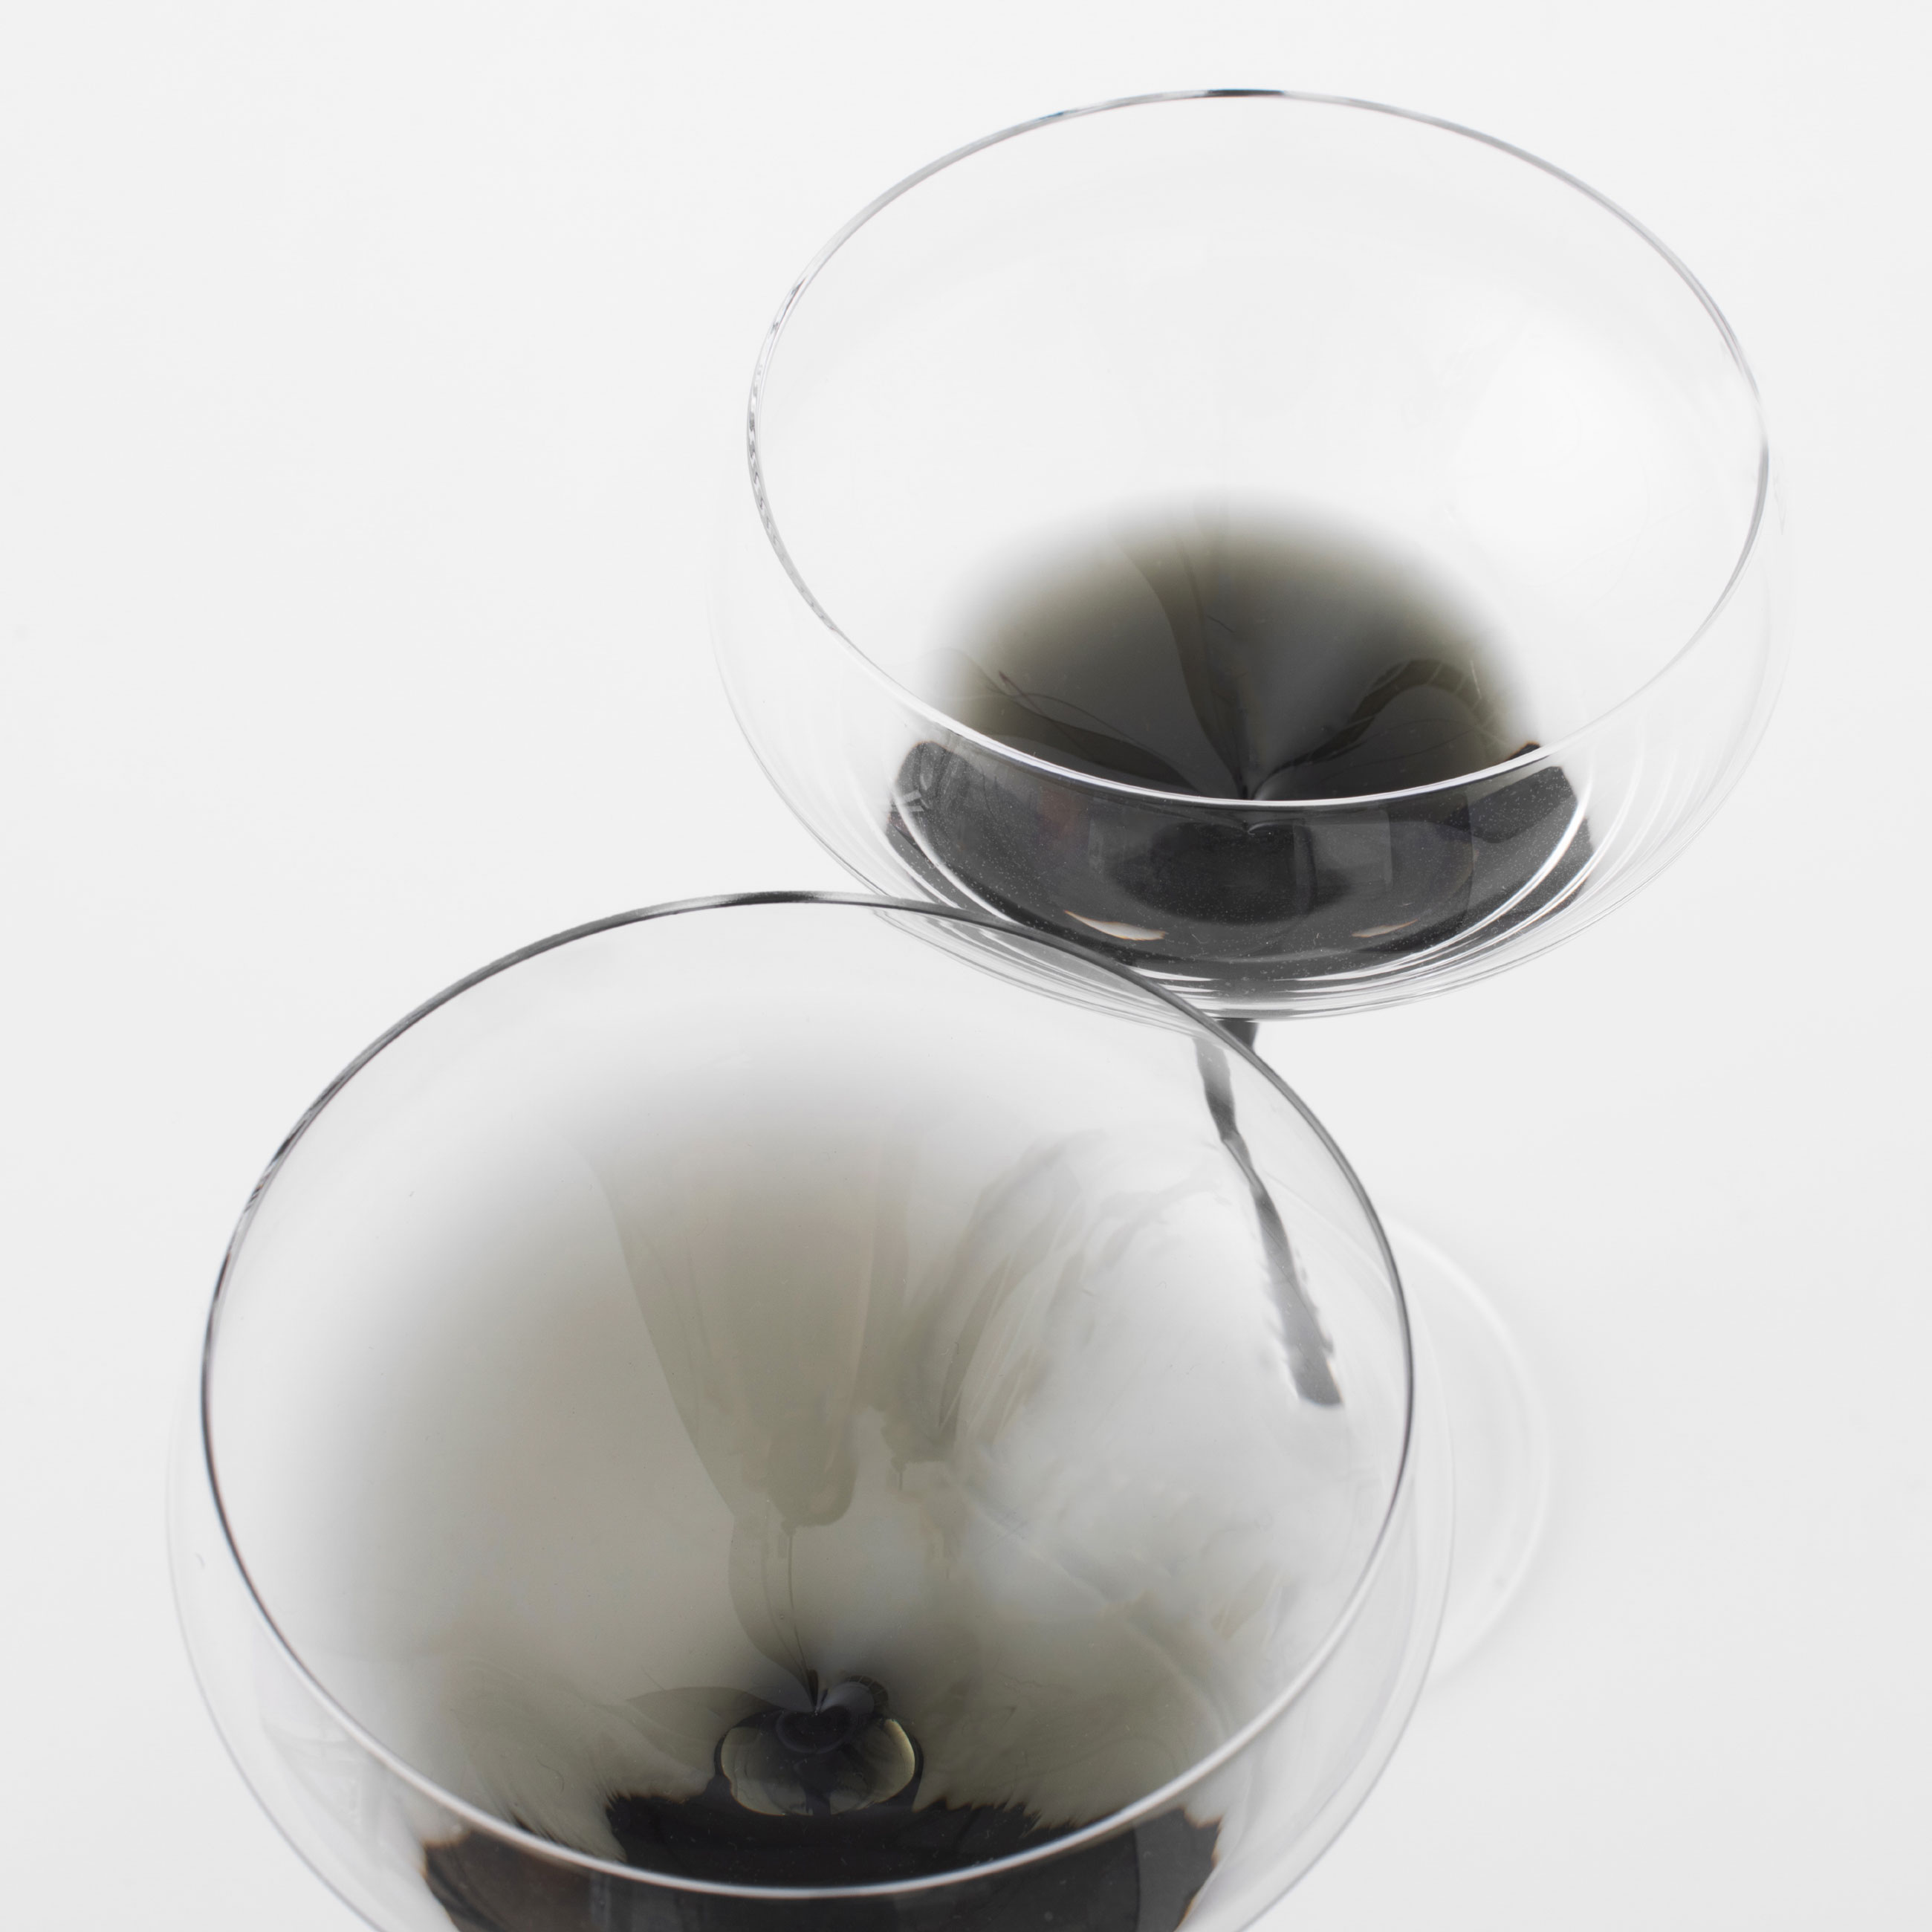 Бокал-креманка для шампанского, 280 мл, 2 шт, стекло, серый градиент, черная ножка, Stone color